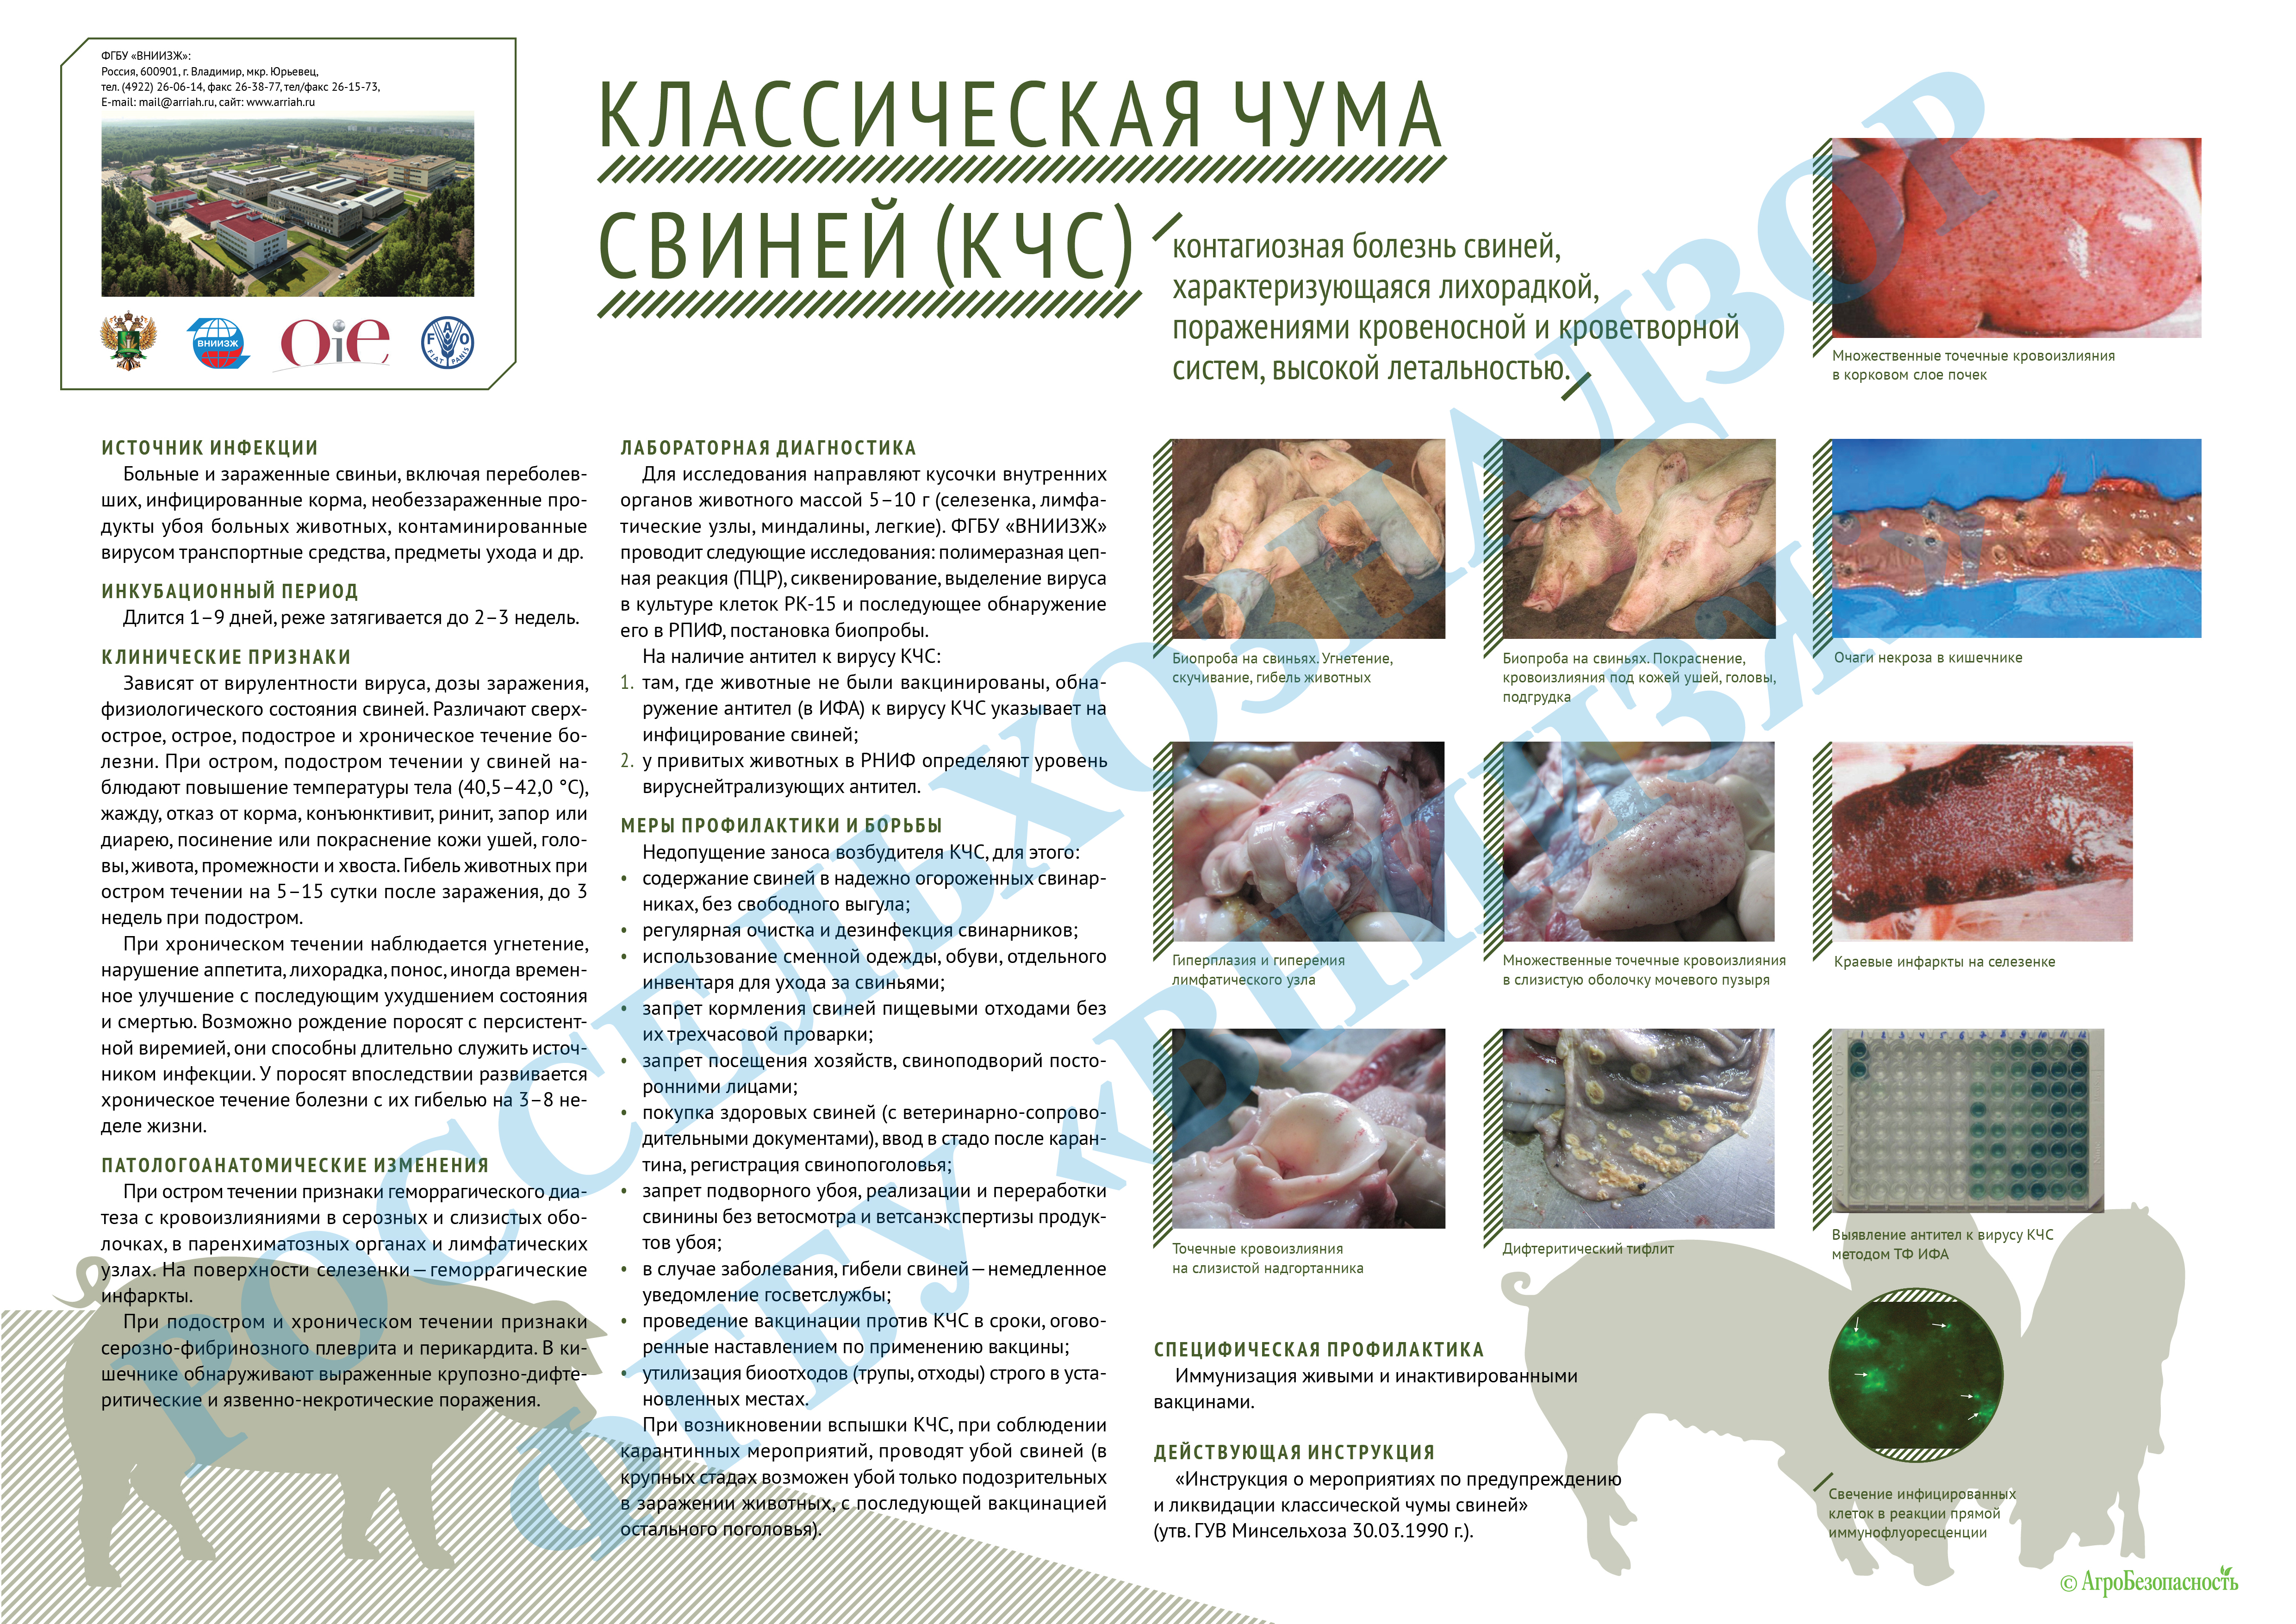 Болезни свиней - инфекционные, неинфекционные заболевания и борьба с ними